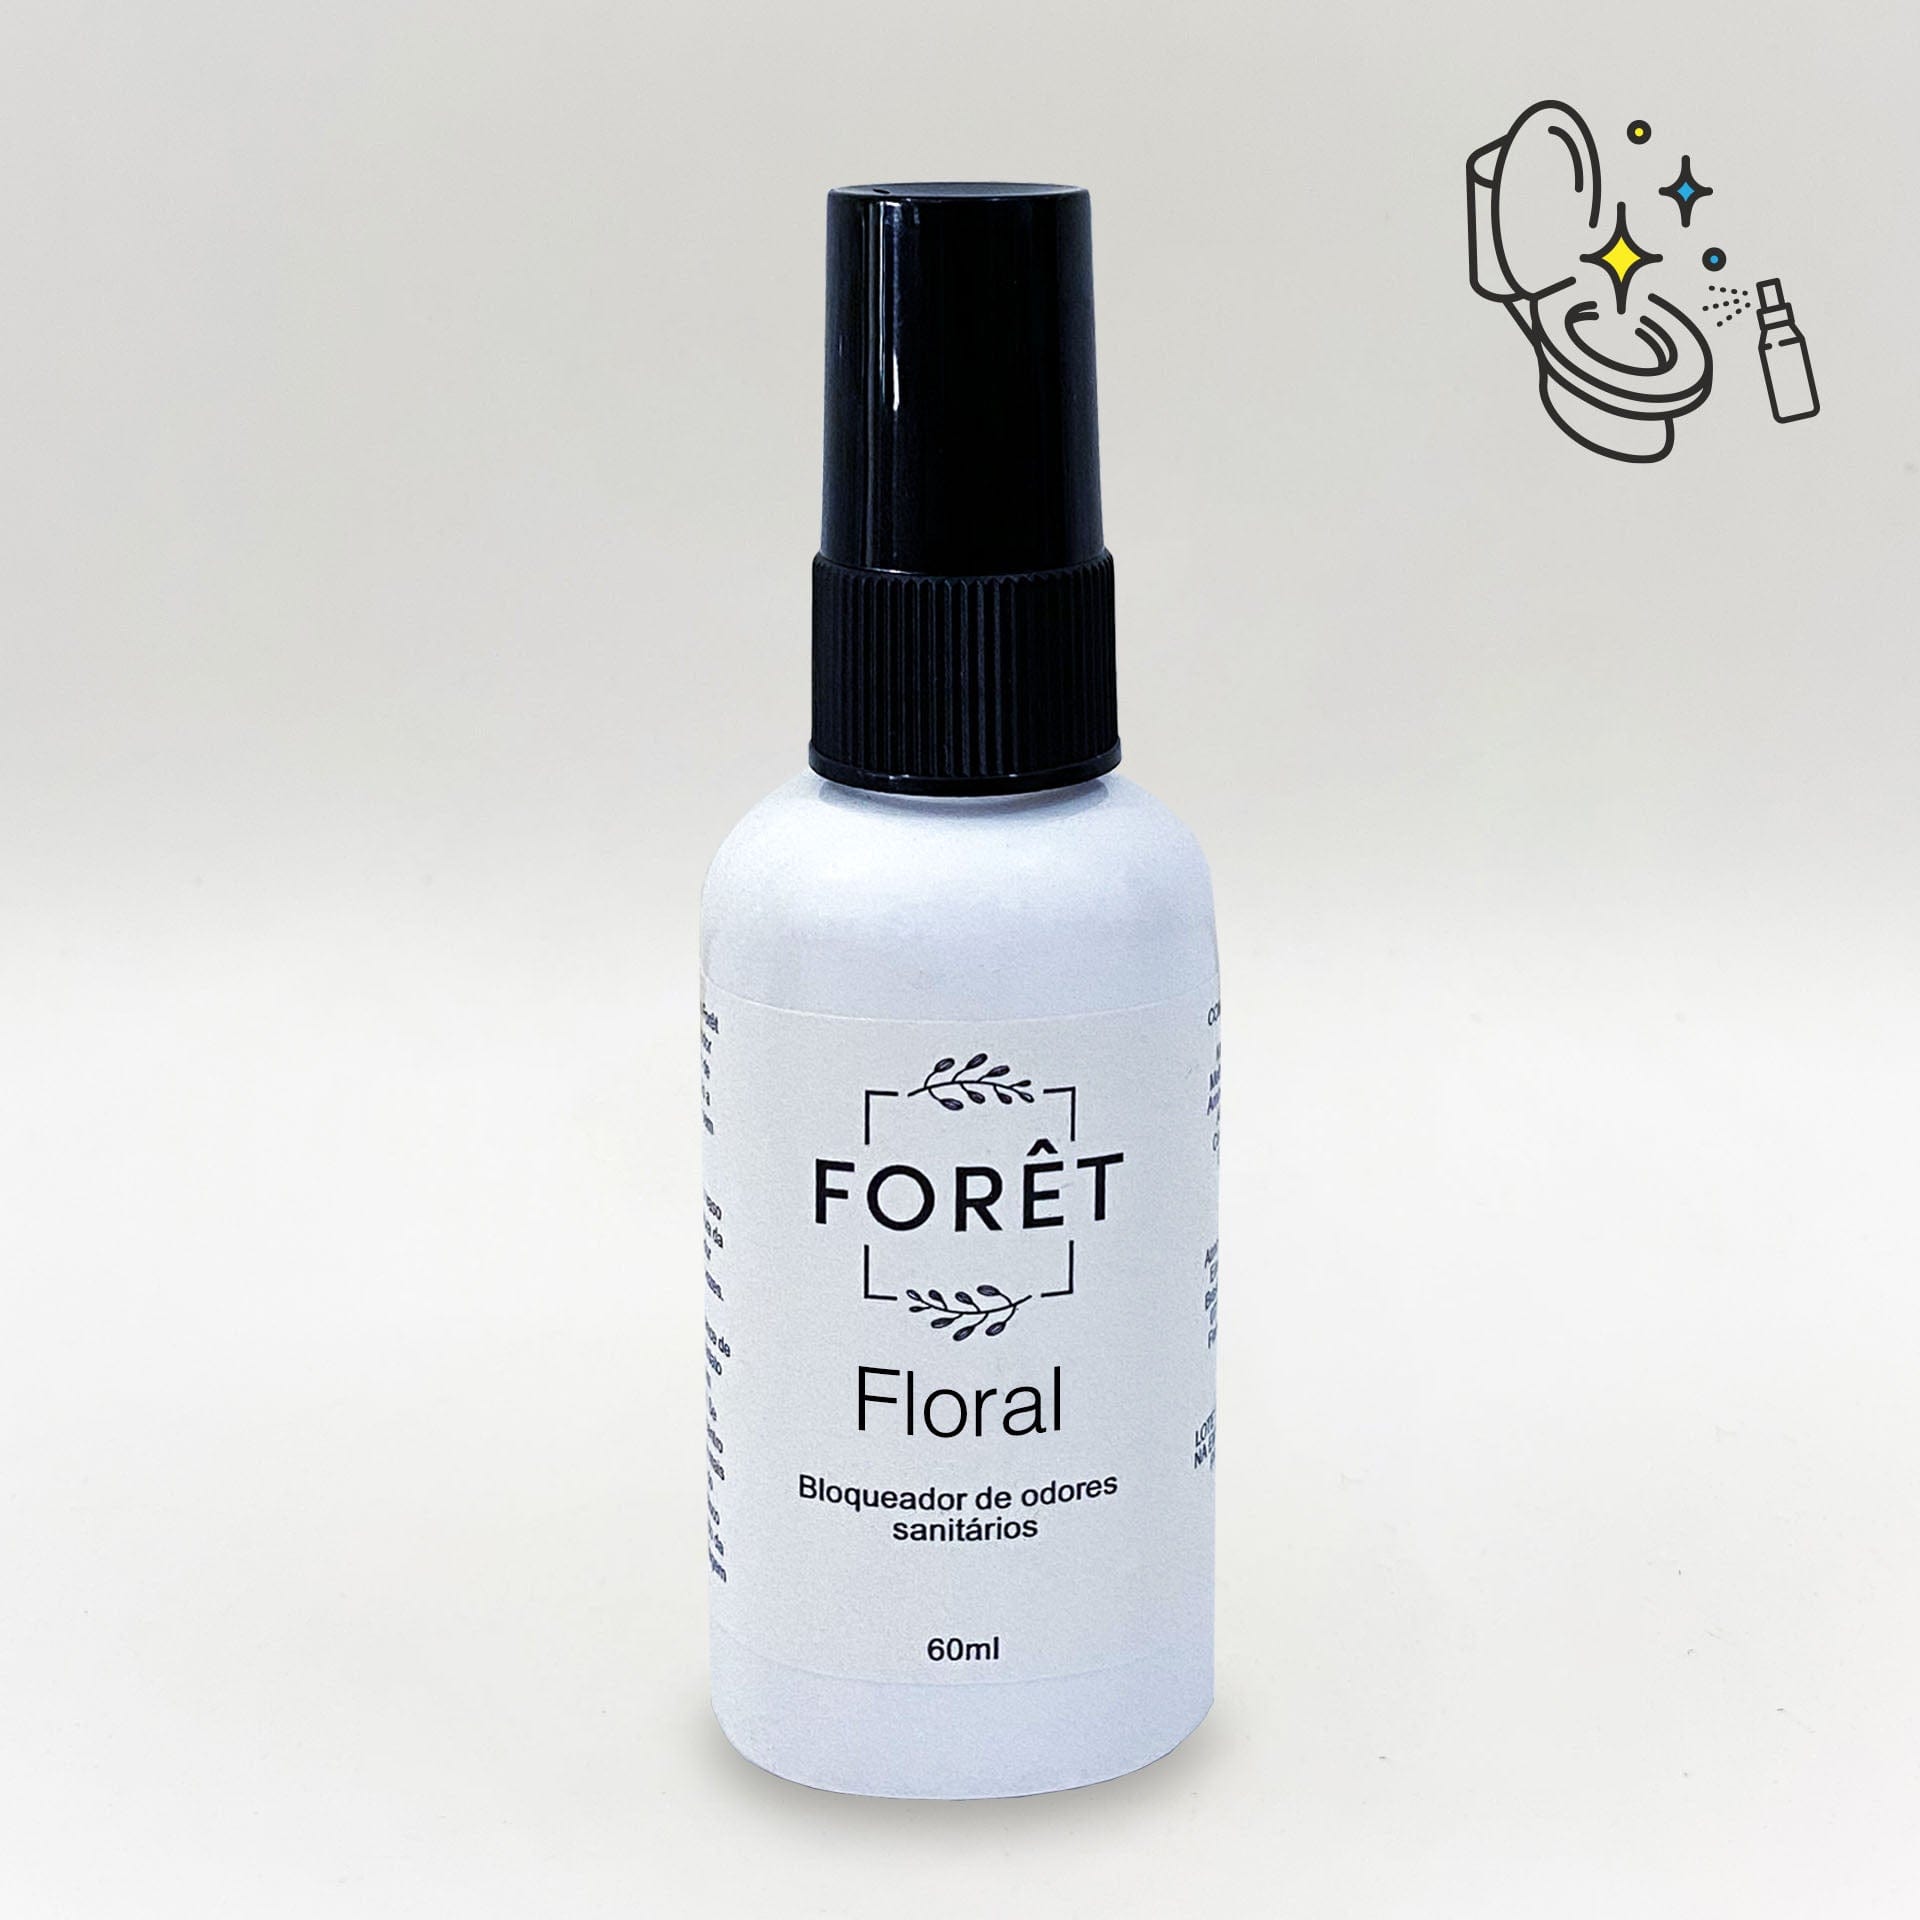 Bloqueador de Odores Sanitários Floral Forêt Bloqueador de Odores Sanitários